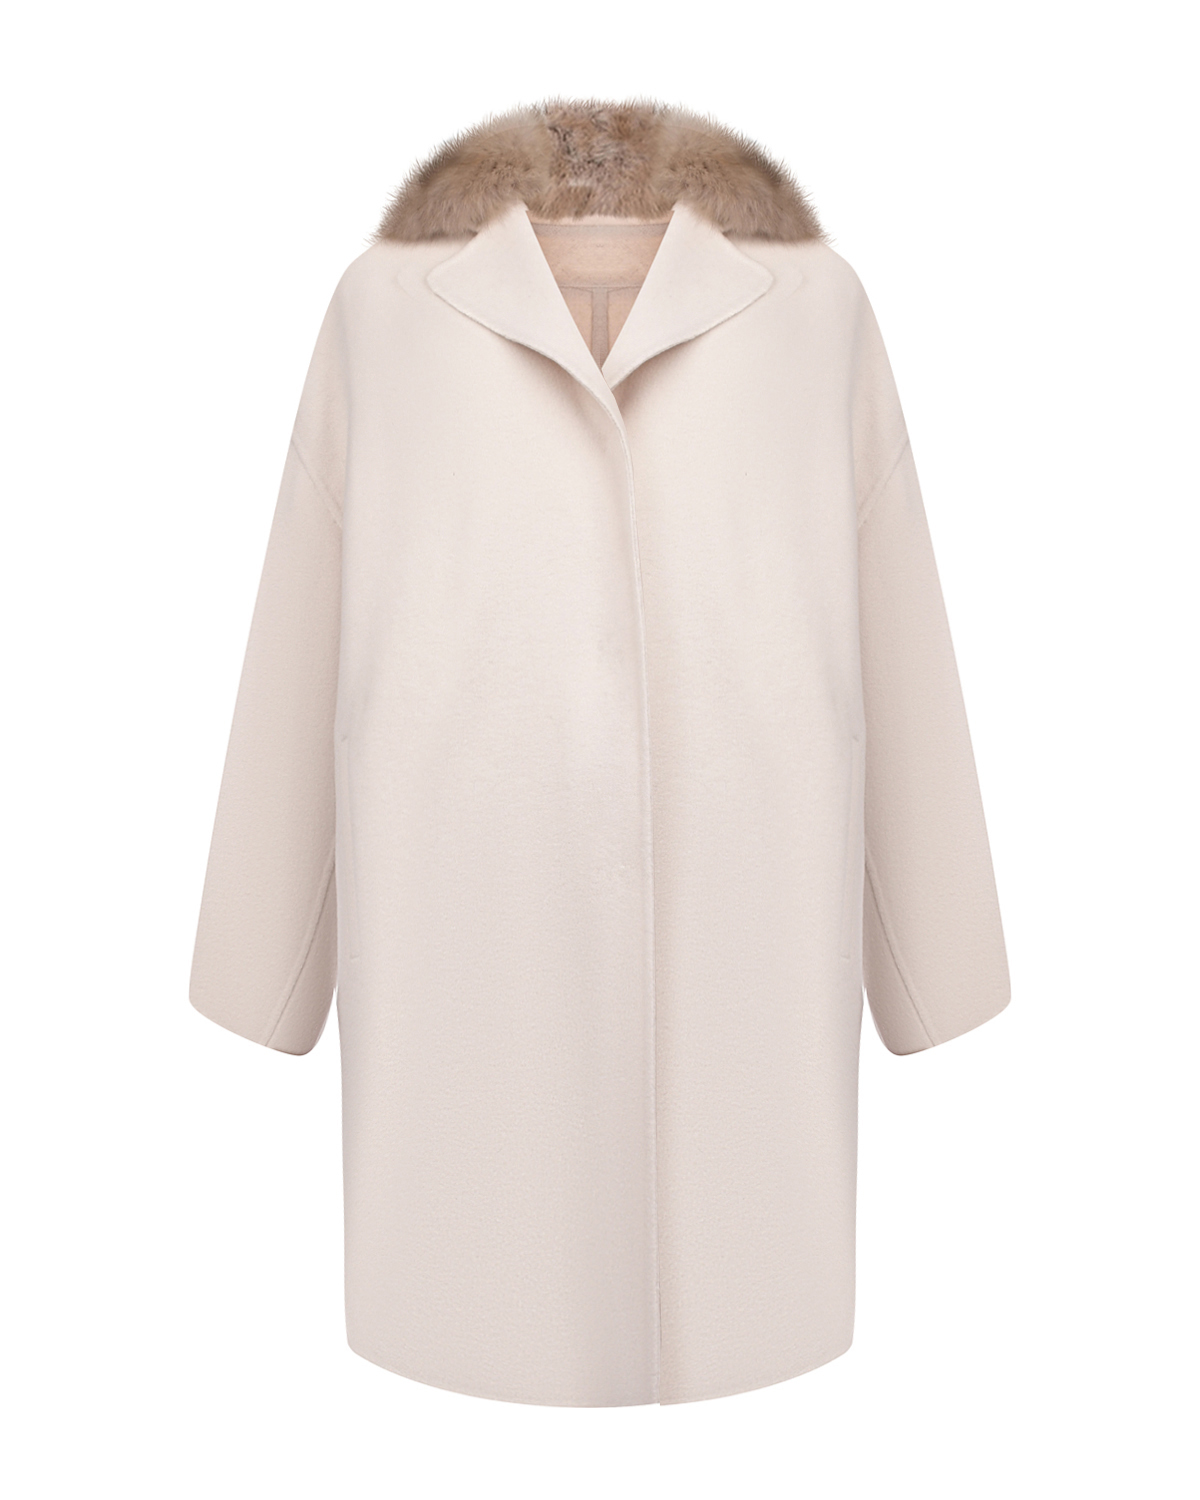 Кашемировое пальто с воротом из меха соболя Yves Salomon, размер 38, цвет нет цвета